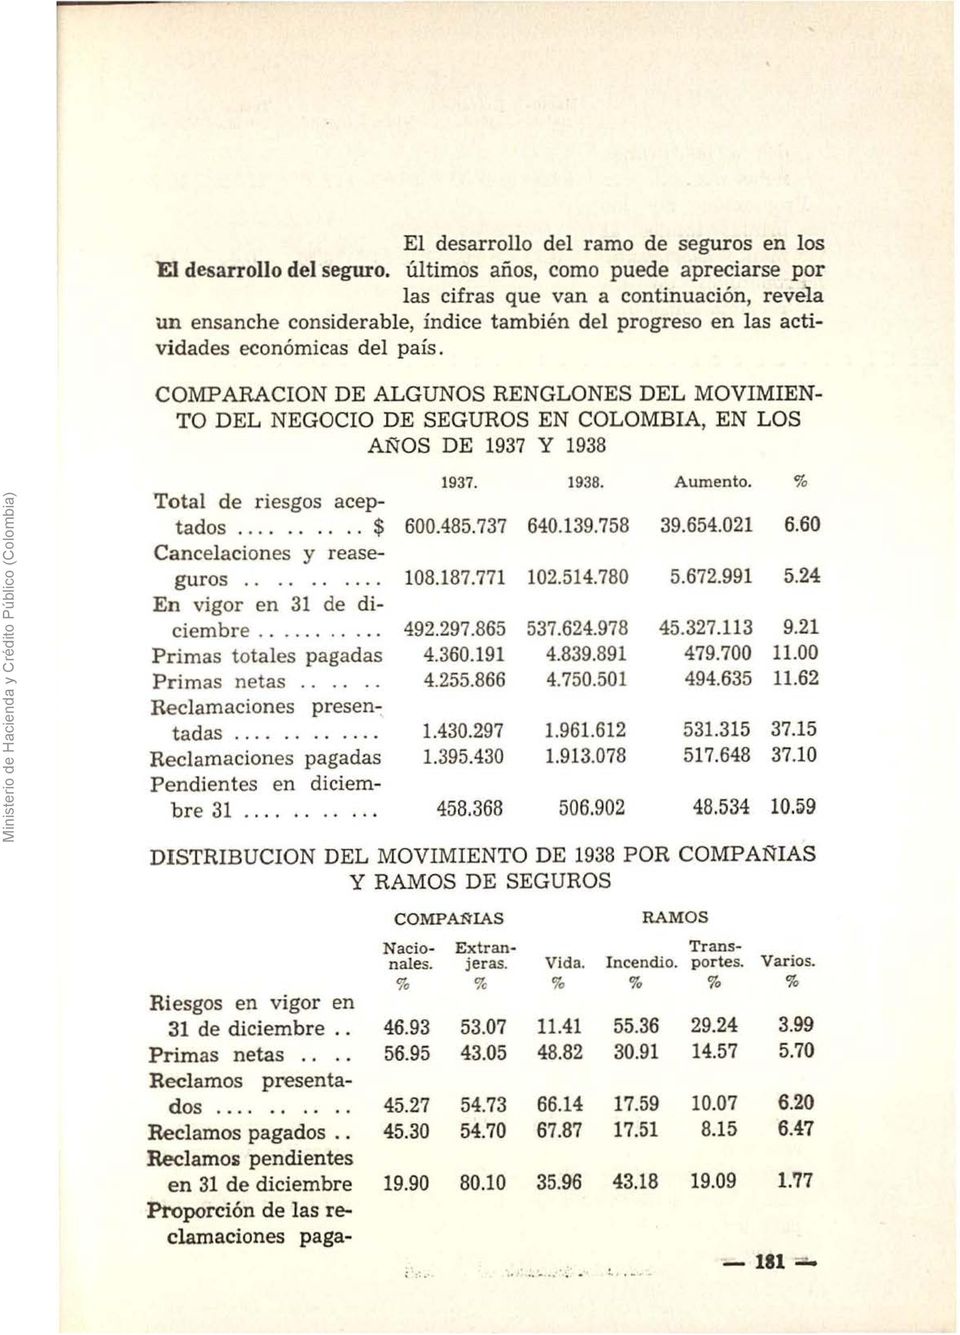 COMPARACION DE ALGUNOS RENGLONES DEL MOVIMIEN TO DEL NEGOCIO DE SEGUROS EN COLOMBIA, EN LOS AÑOS DE 1937 Y 1938 Ministerio de Hacienda y Crédito Público (Colombia) Total de riesgos aceptados.